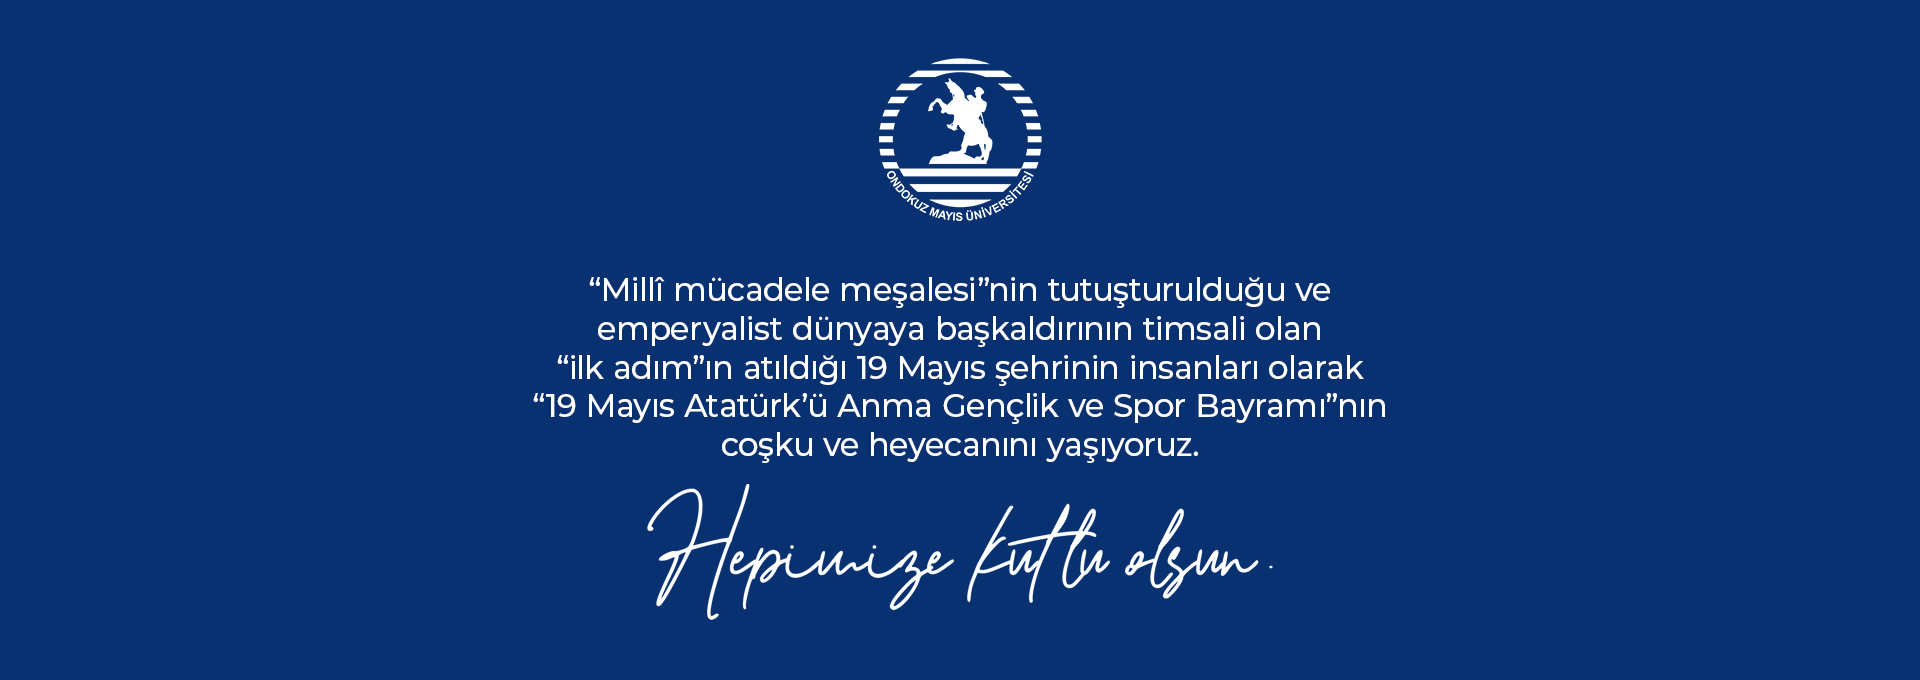 19 Mayıs Atatürk'ü Anma Gençlik ve Spor Bayramı Kutlama Mesajı 